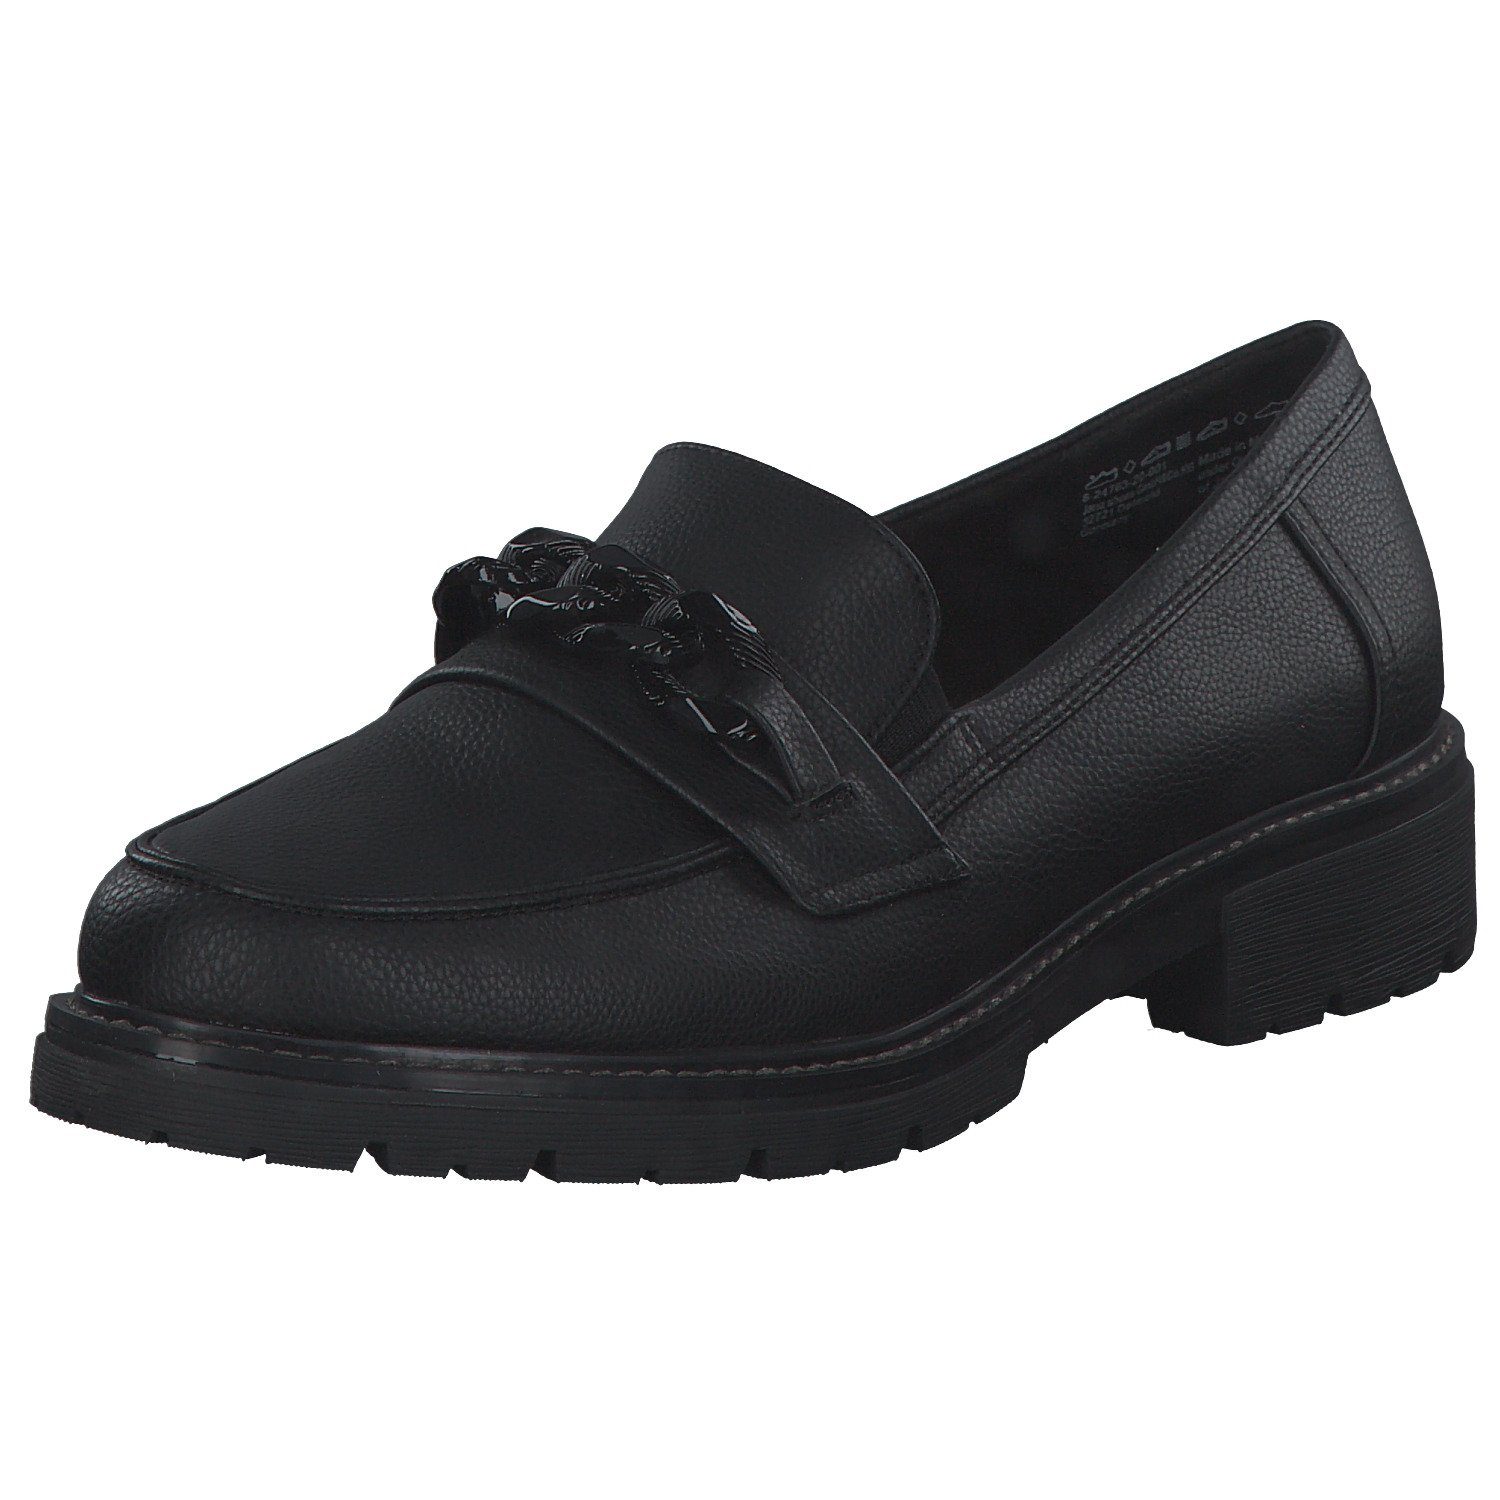 Mokassin Jana 24763 (10101304) Jana black Shoes